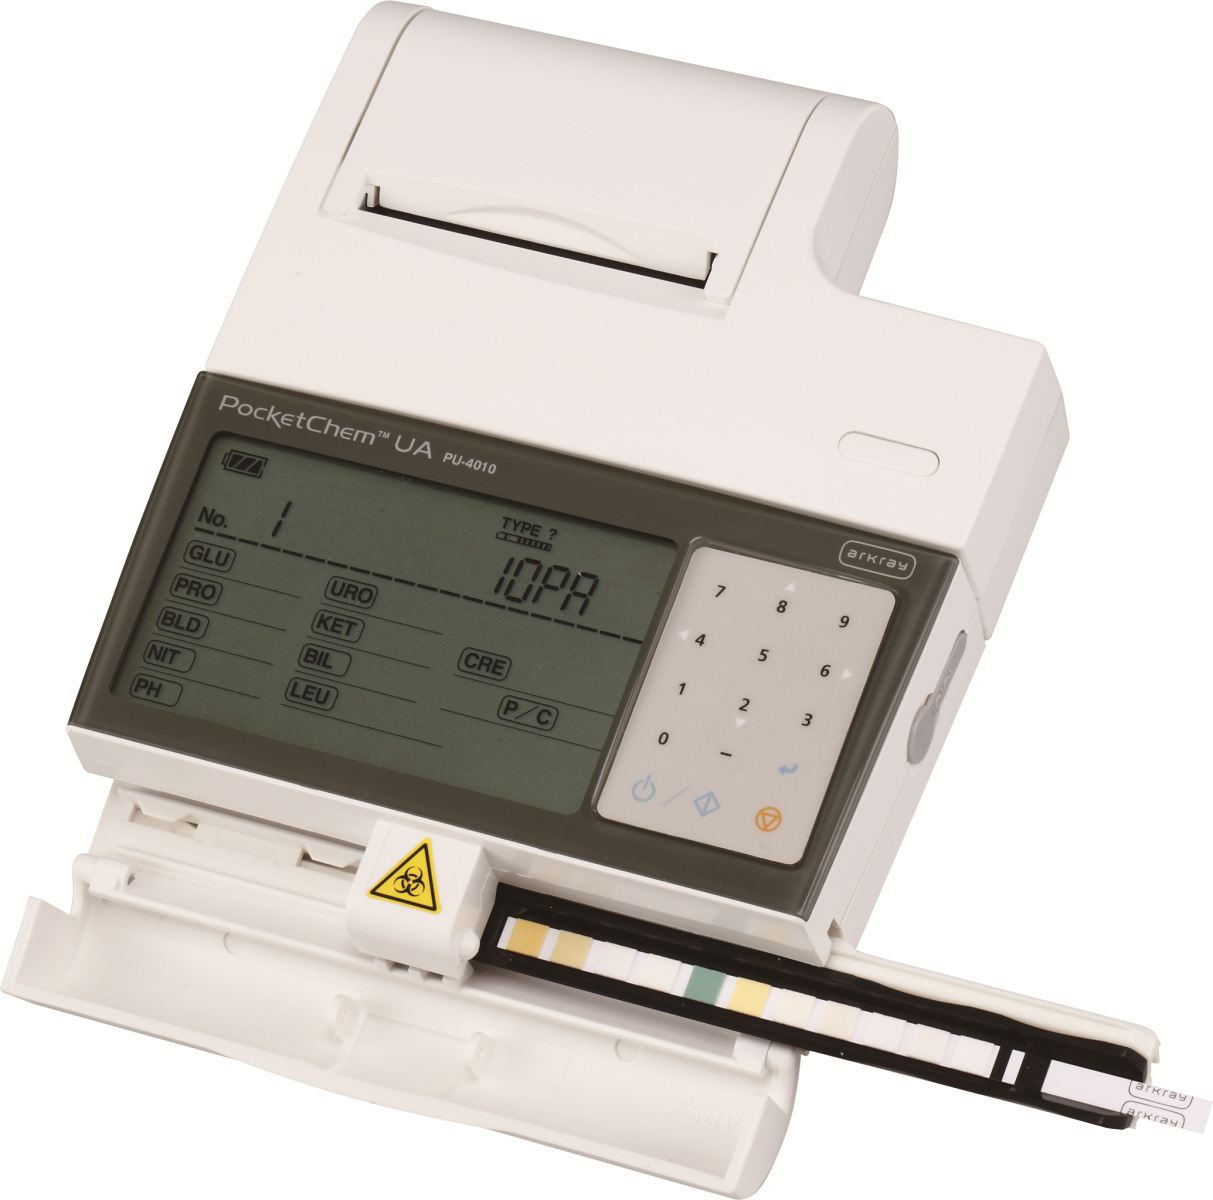 Máy xét nghiệm nước tiểu bán tự động PocketChem UA PU-4010